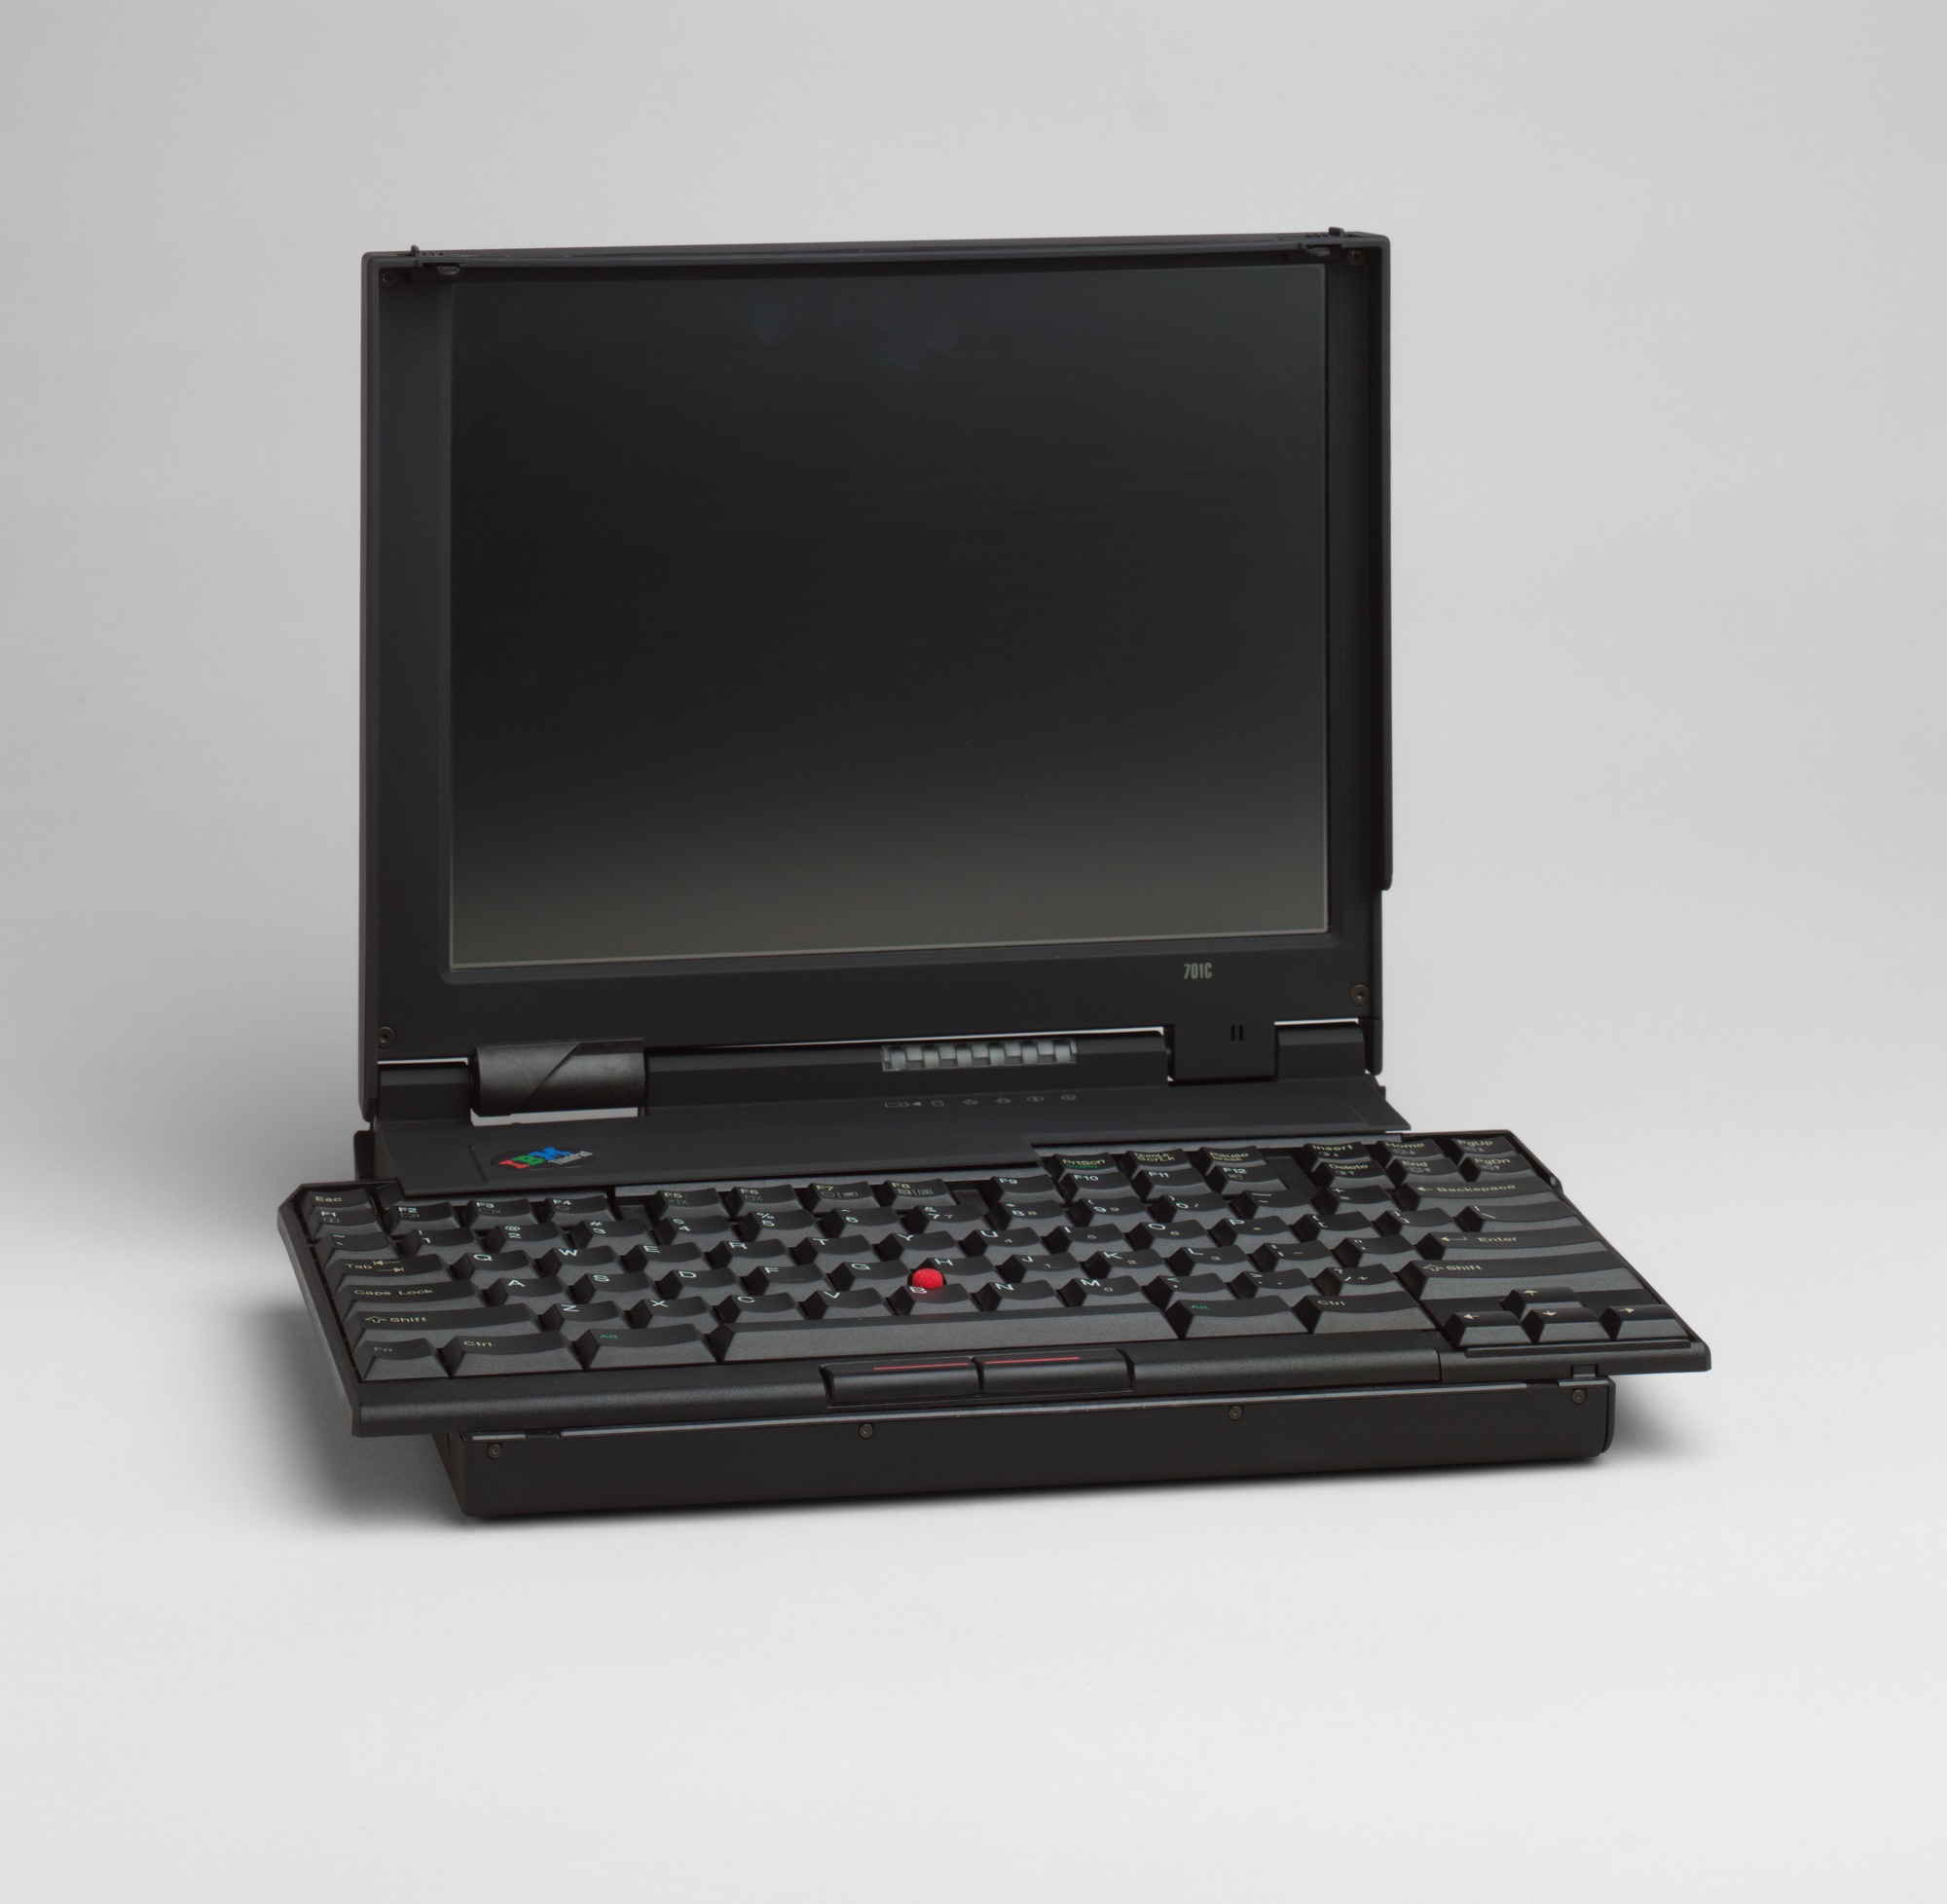 IBM ThinkPad 701